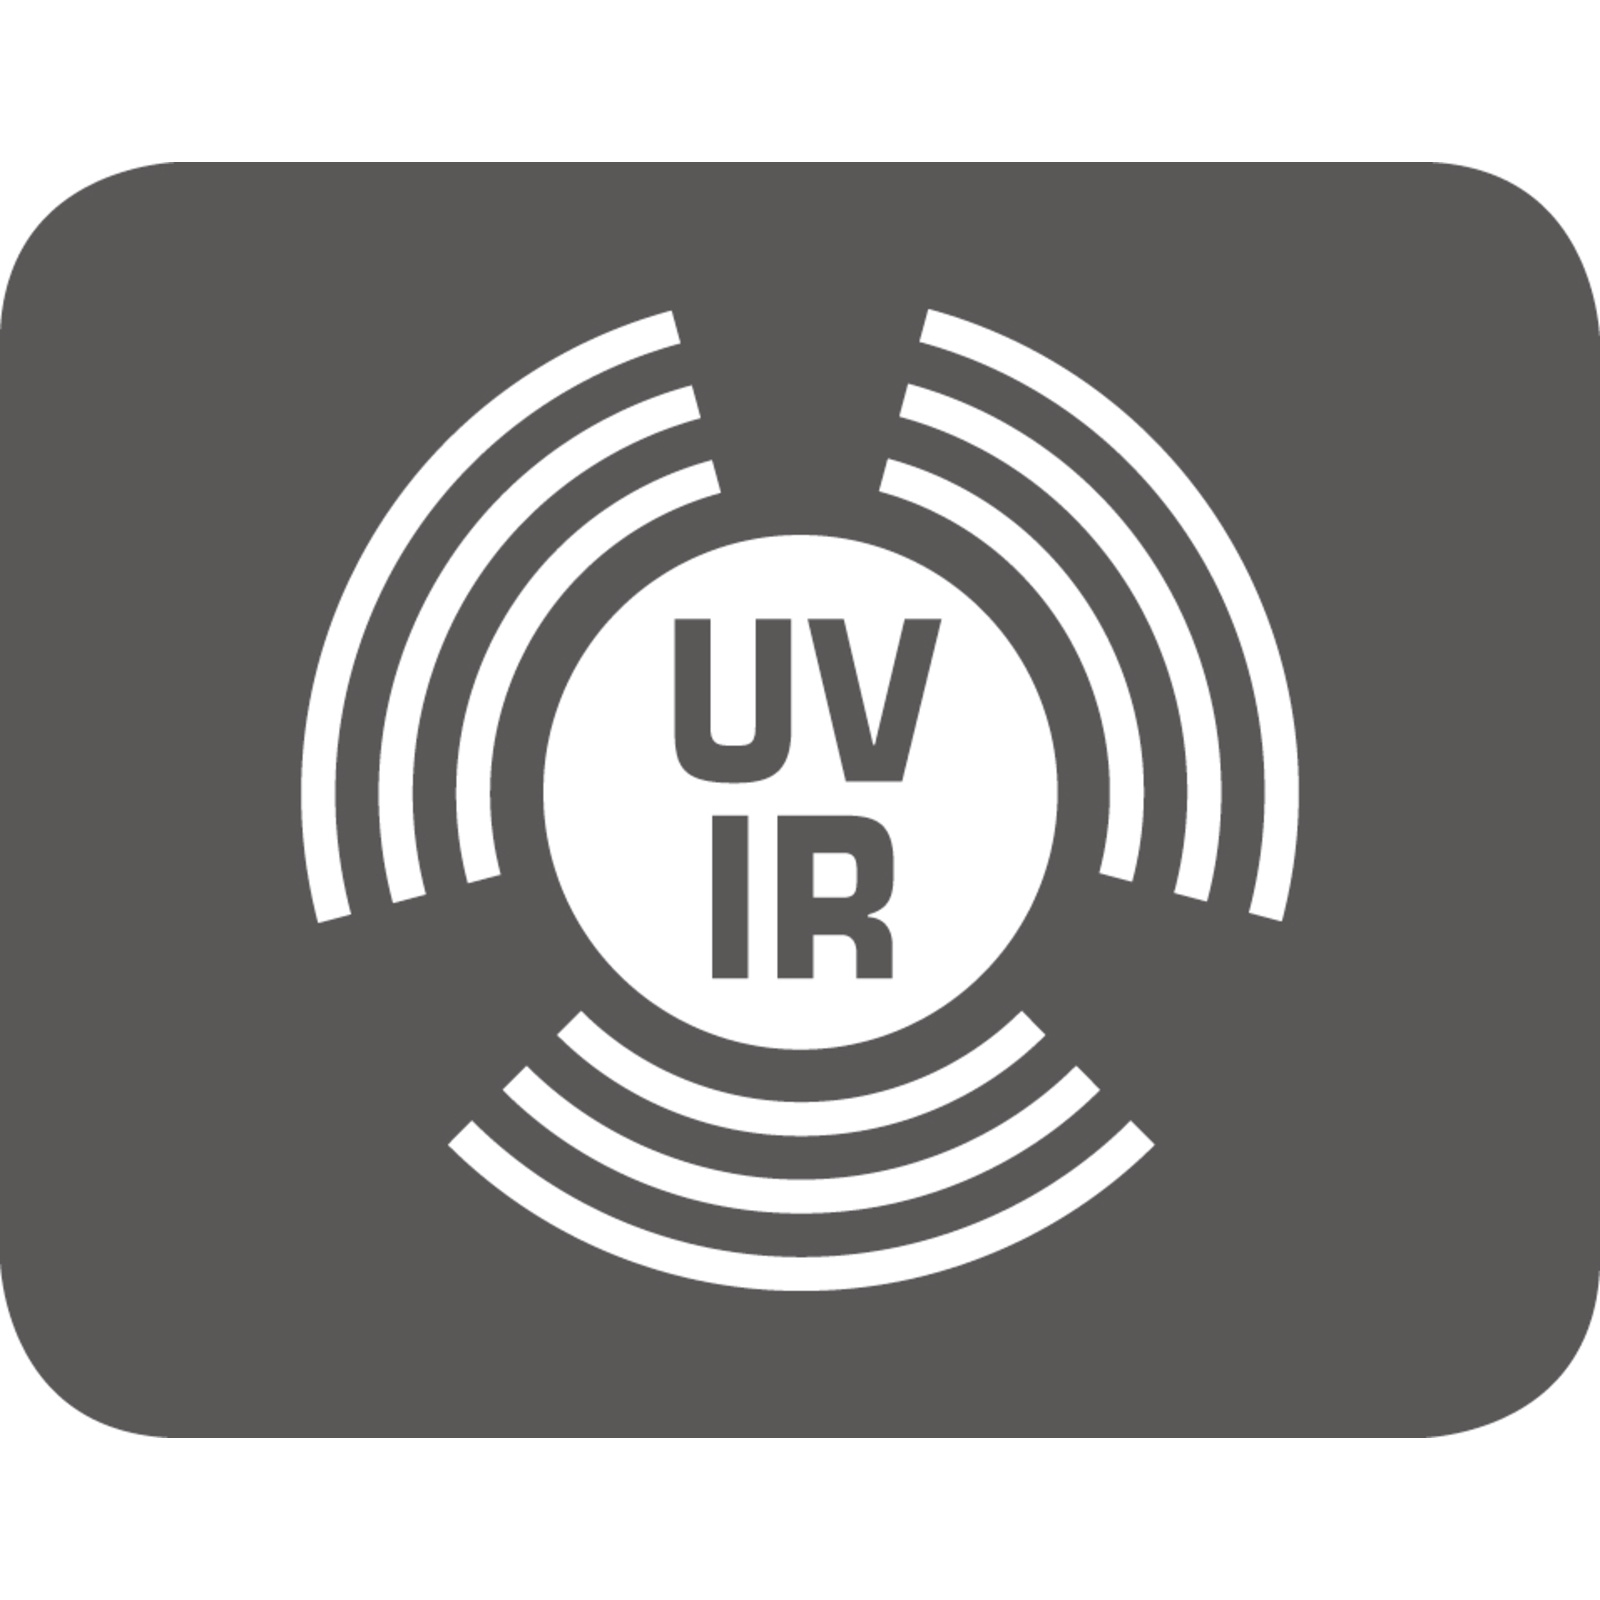 UV / IR